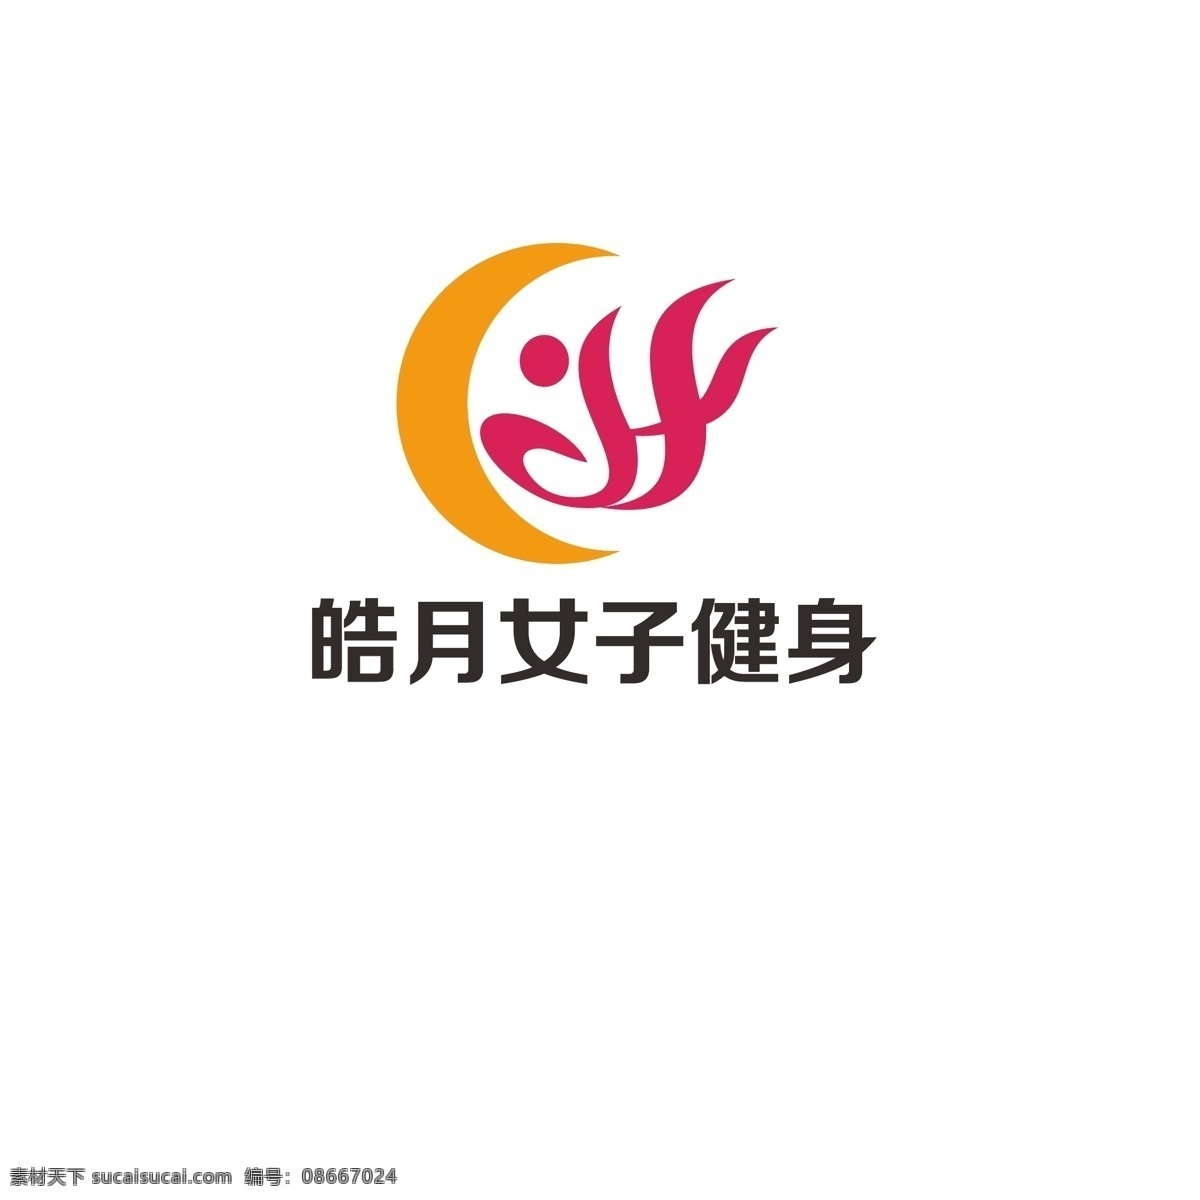 女子 健身 logo 凤凰 简约 发展 字母h 人